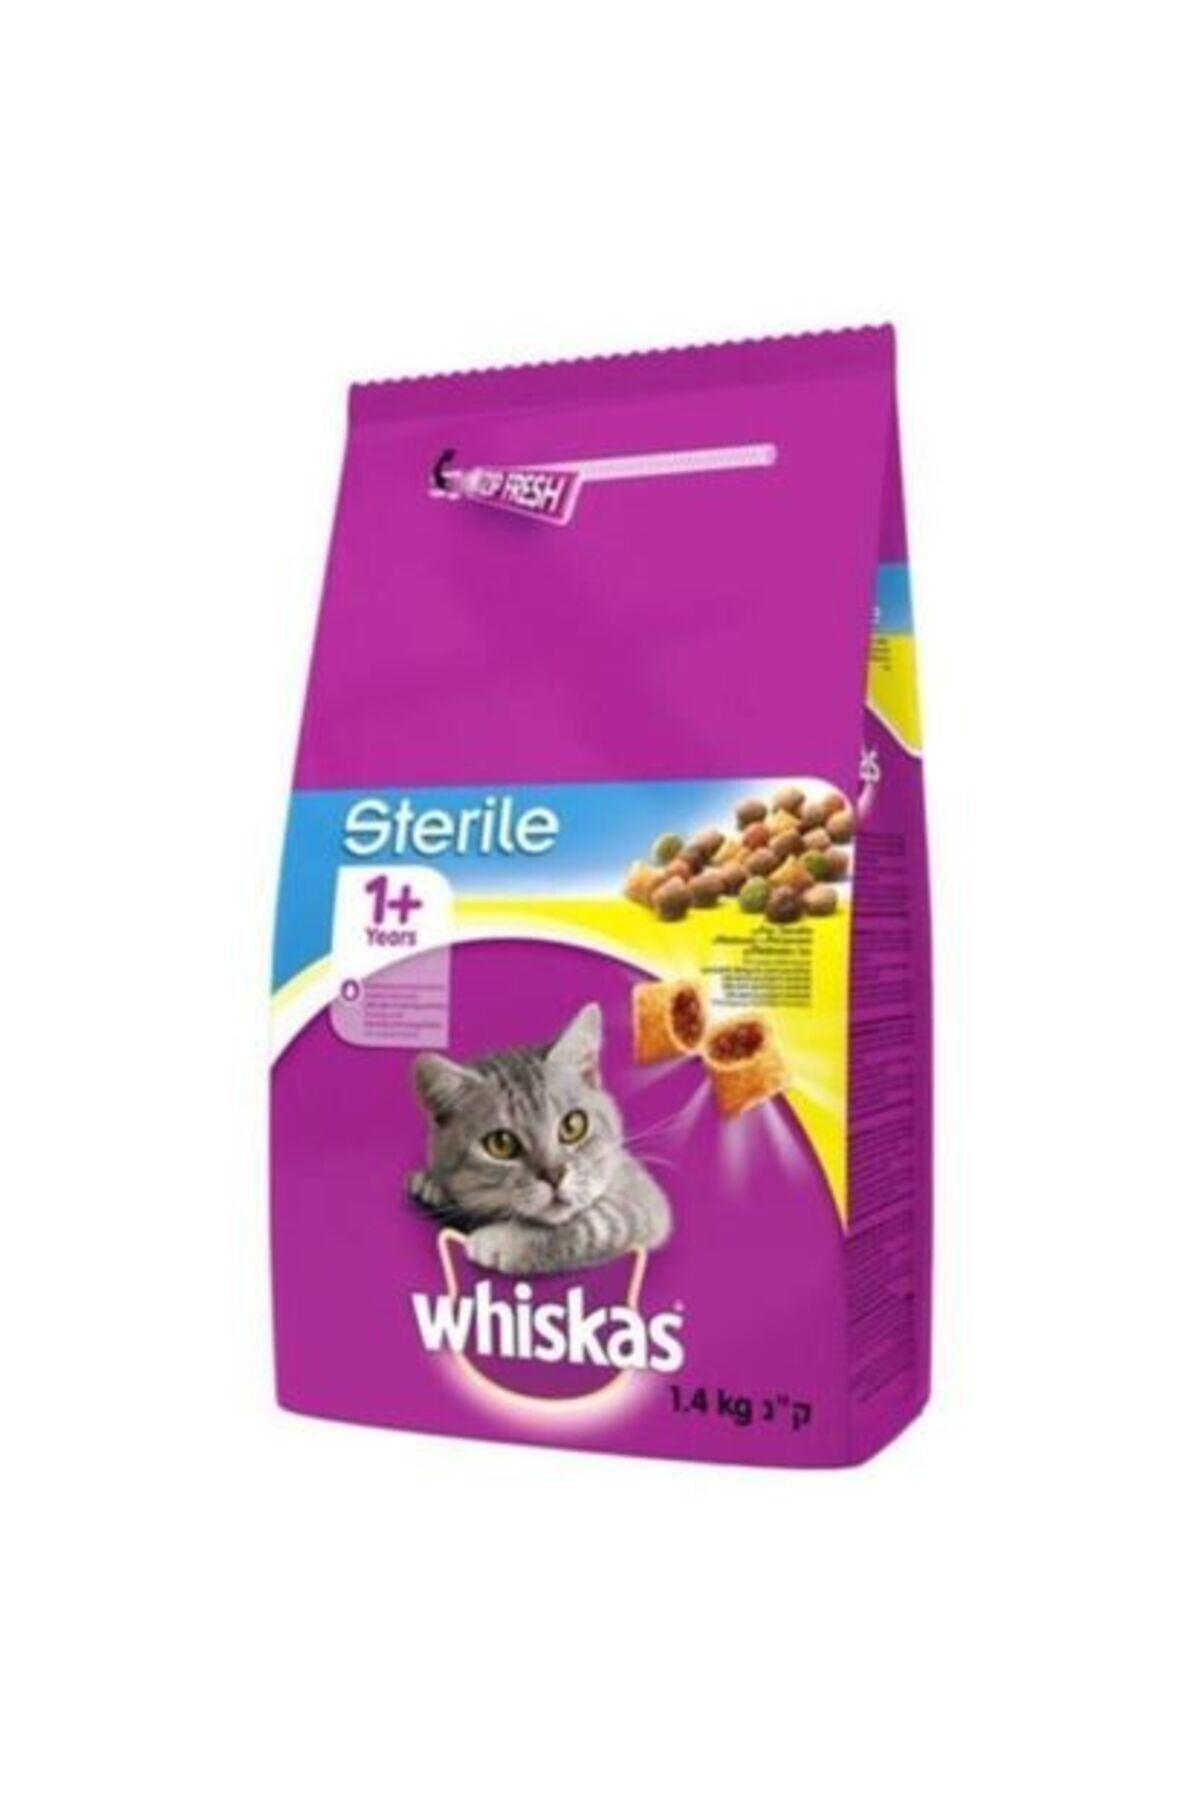 Whiskas Sterile Tavuklu Kısırlaştırılmış Kedi Mamasi 1,4 Kg